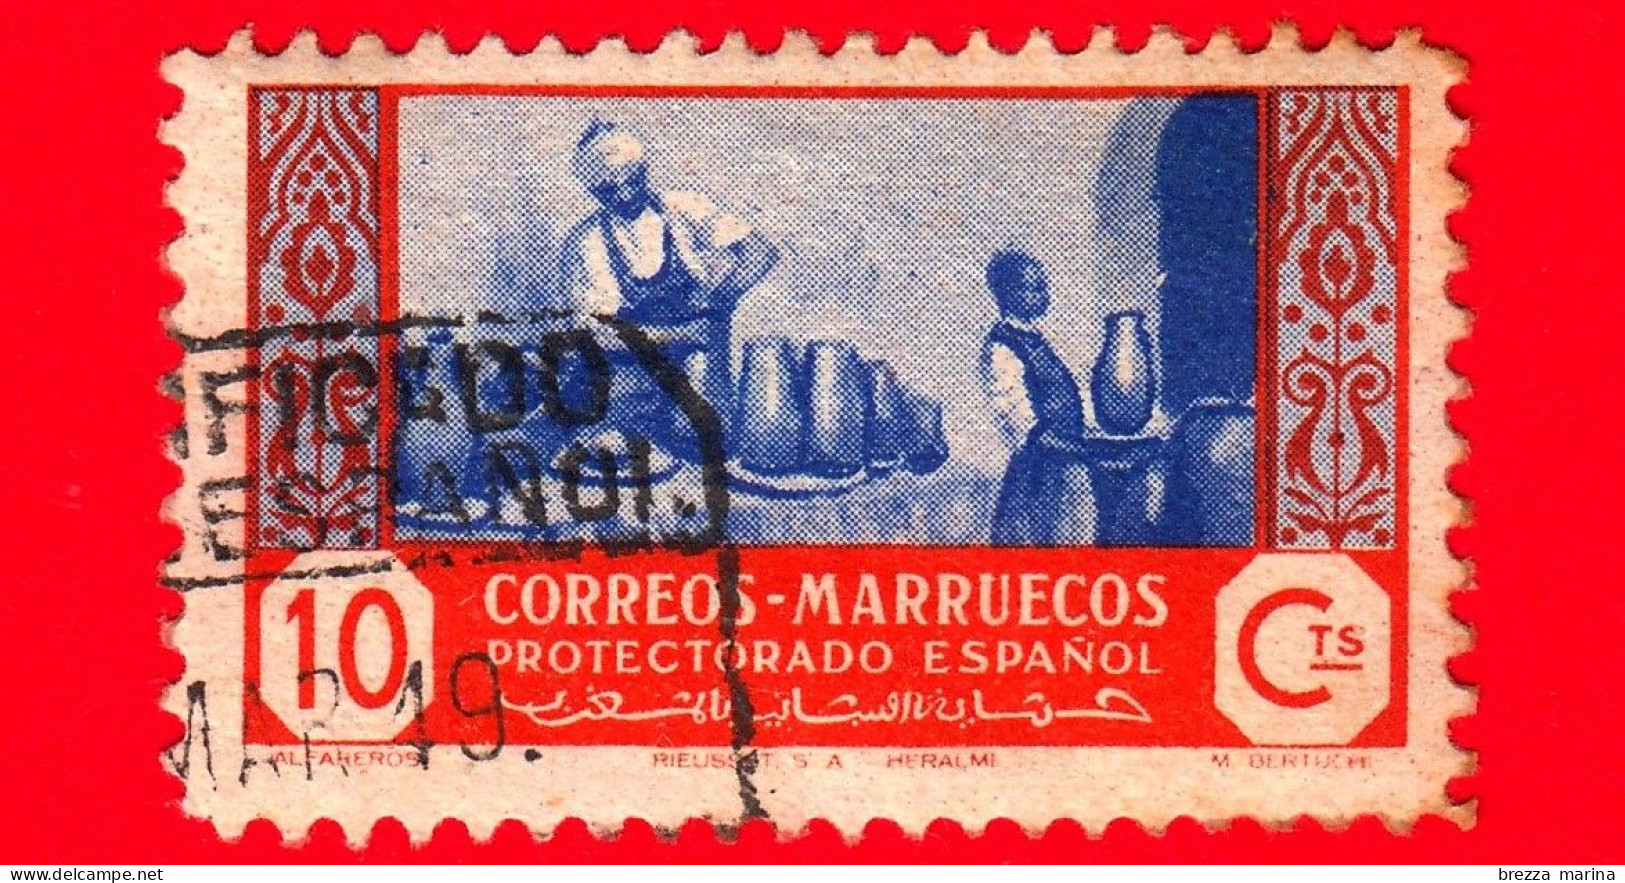 MAROCCO - Usato - Marruecos - 1951 - Artigianato - 10 - Spanish Morocco